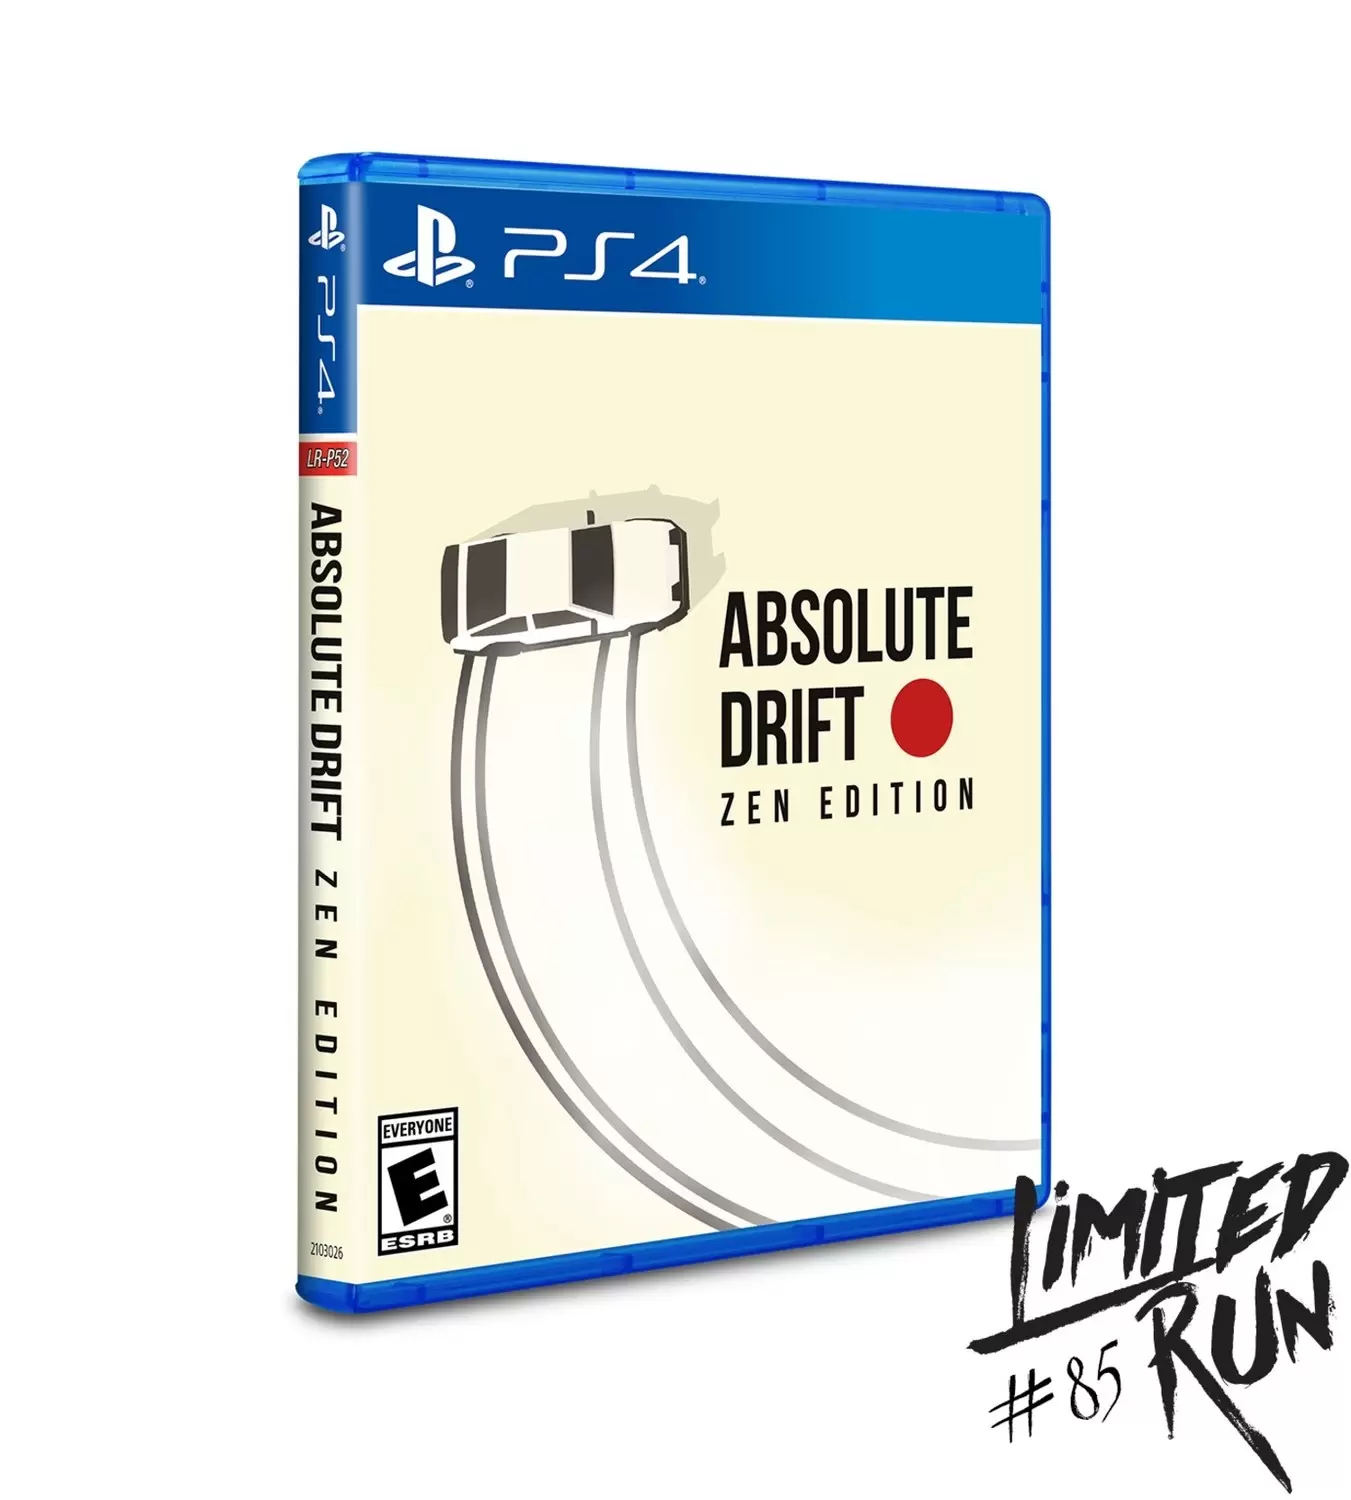 PS4 Games - Absolute Drift: Zen Edition